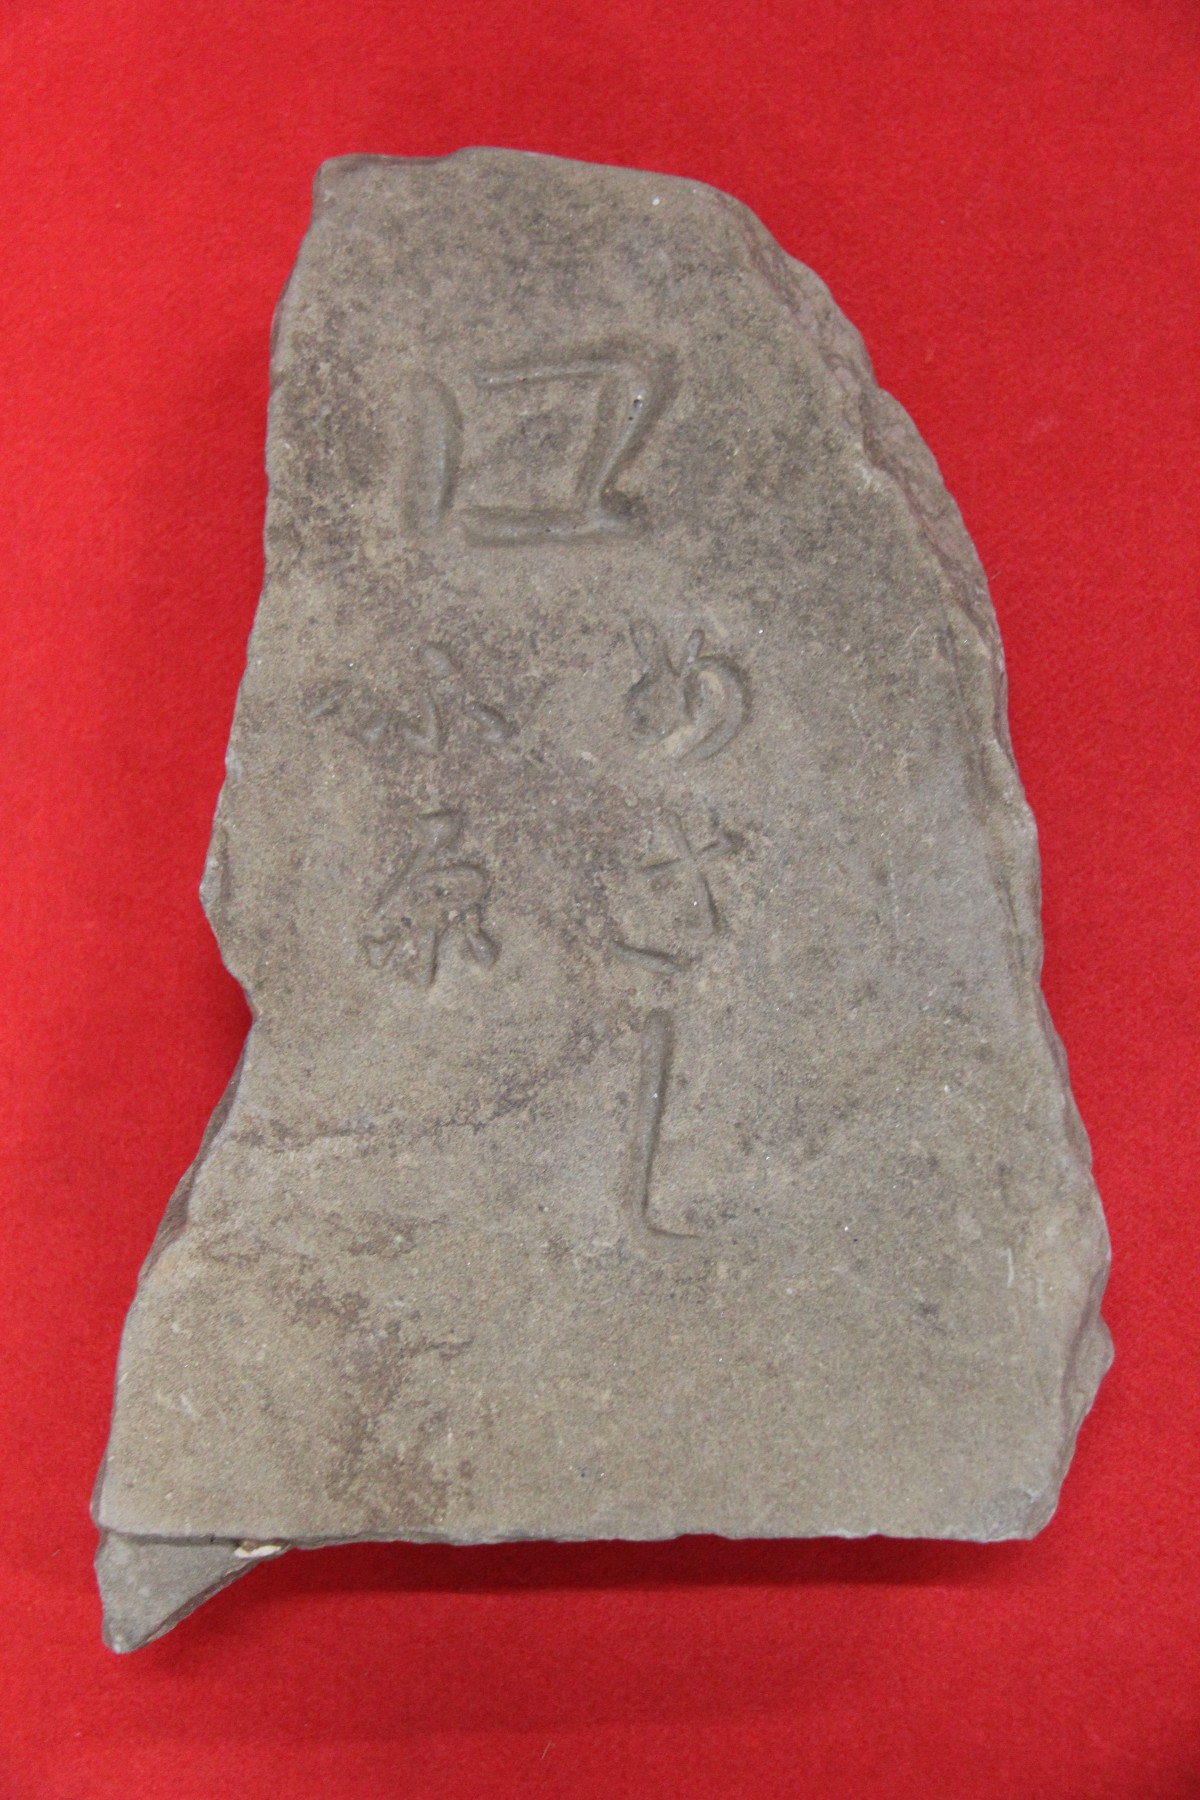 赤色の背景で「ロ めさしふ原」と彫られている印部石の写真